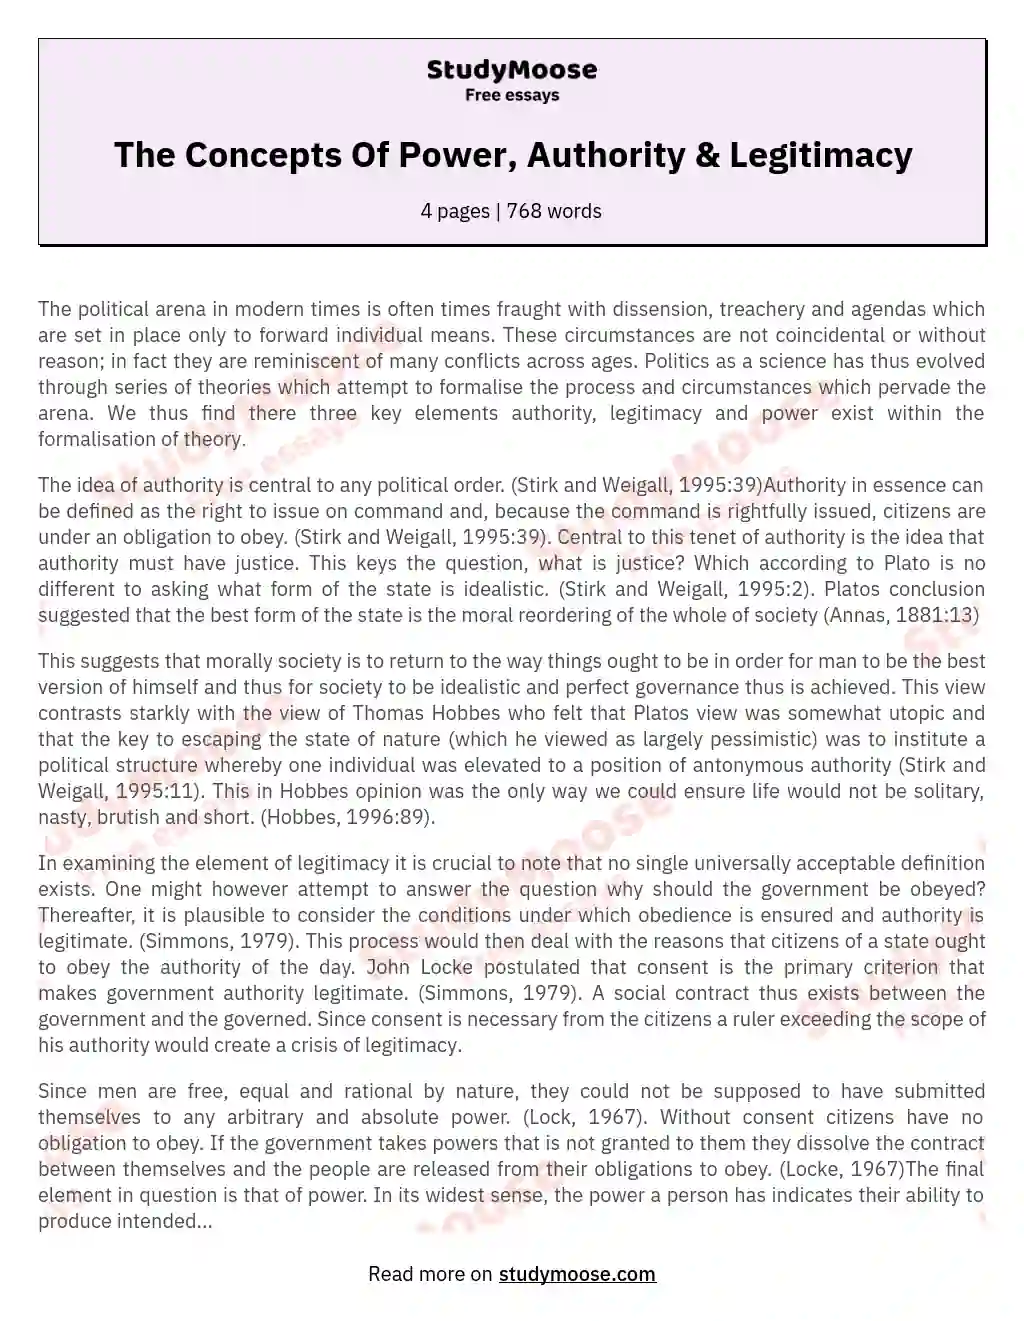 power authority and legitimacy essay